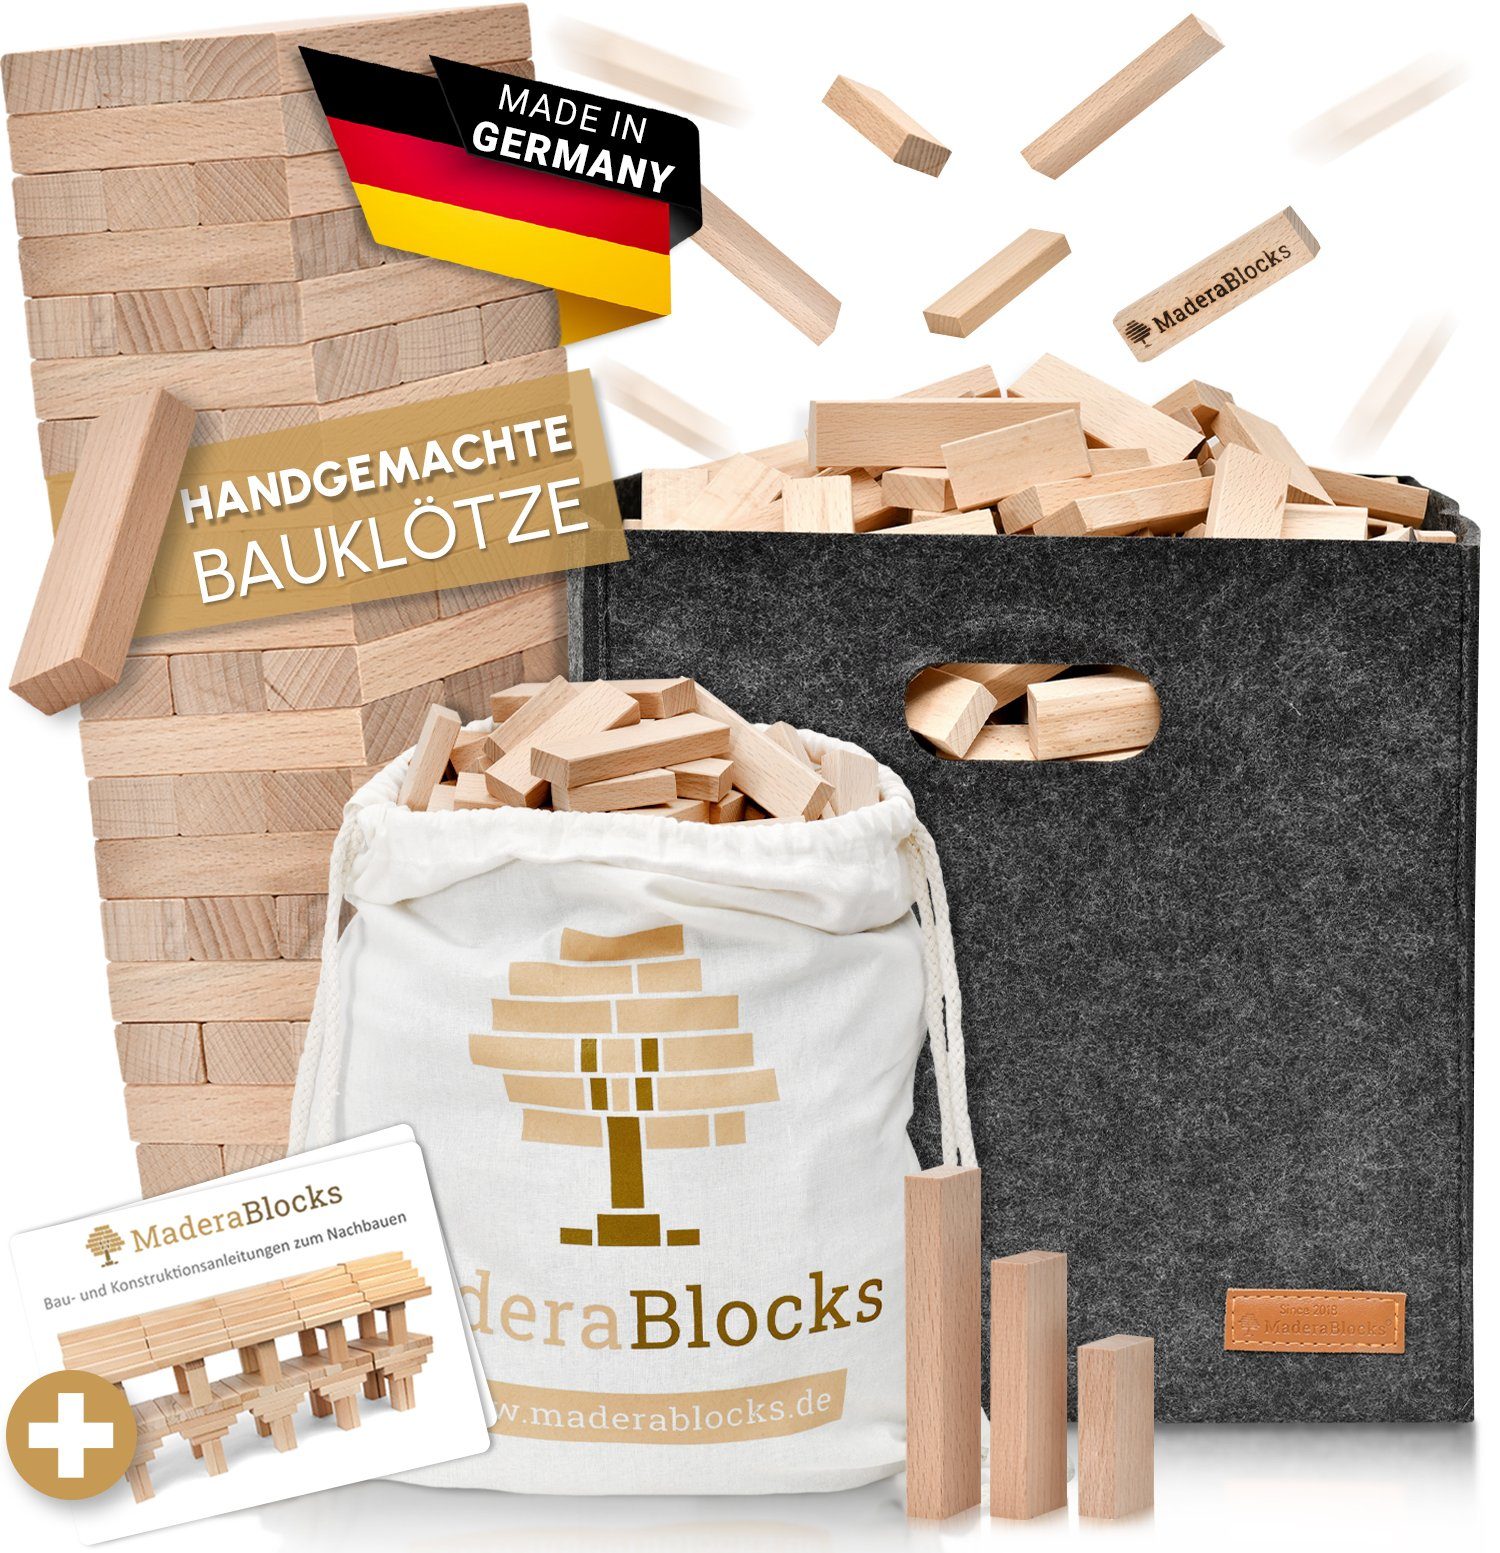 MaderaBlocks Spielbauklötze 200-1.600 Holzbausteine Germany DE, Bauklötze, Bausteine, 100 in (Ravensburg) % Made in Natur, - Made Baumpflanzung